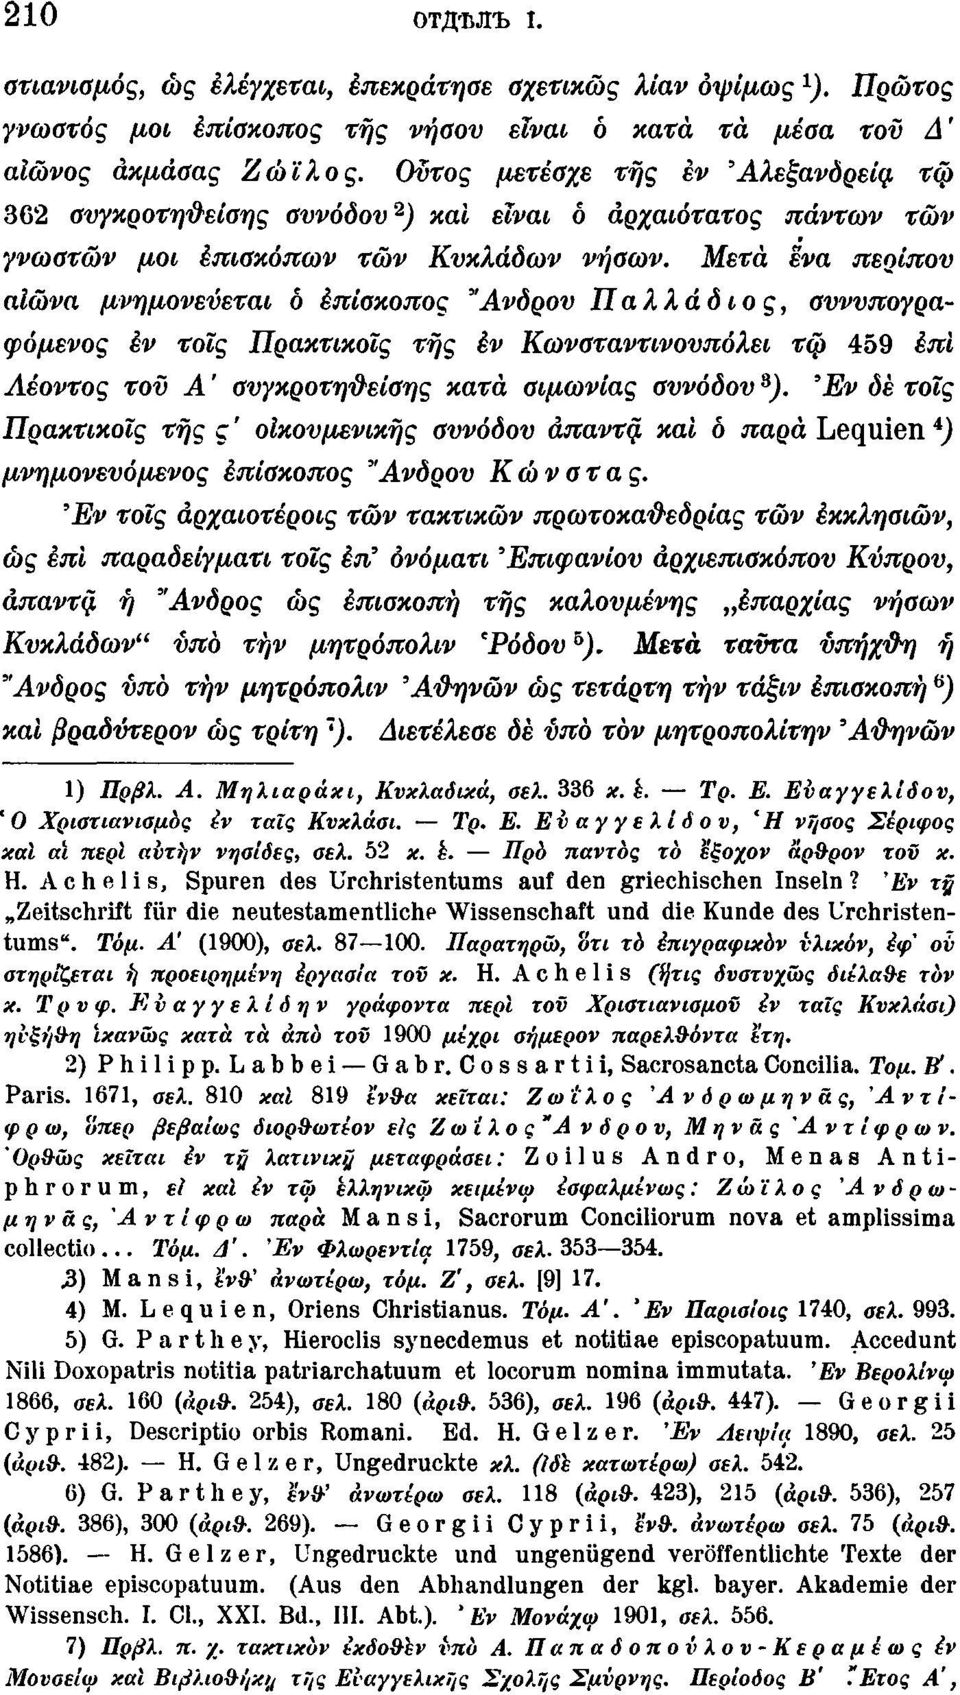 Μετά ενα περίπου αιώνα μνημονεύεται ο επίσκοπος "Ανδρου Παλλάδιος, συνυπογραφόμενος τοις Πρακτικοϊς της Κωνσταντινουπόλει τφ 459 επί Αέοντος του Α ' συγκροτηυείσης κατά αιμωνίας συνόδου 3 ).